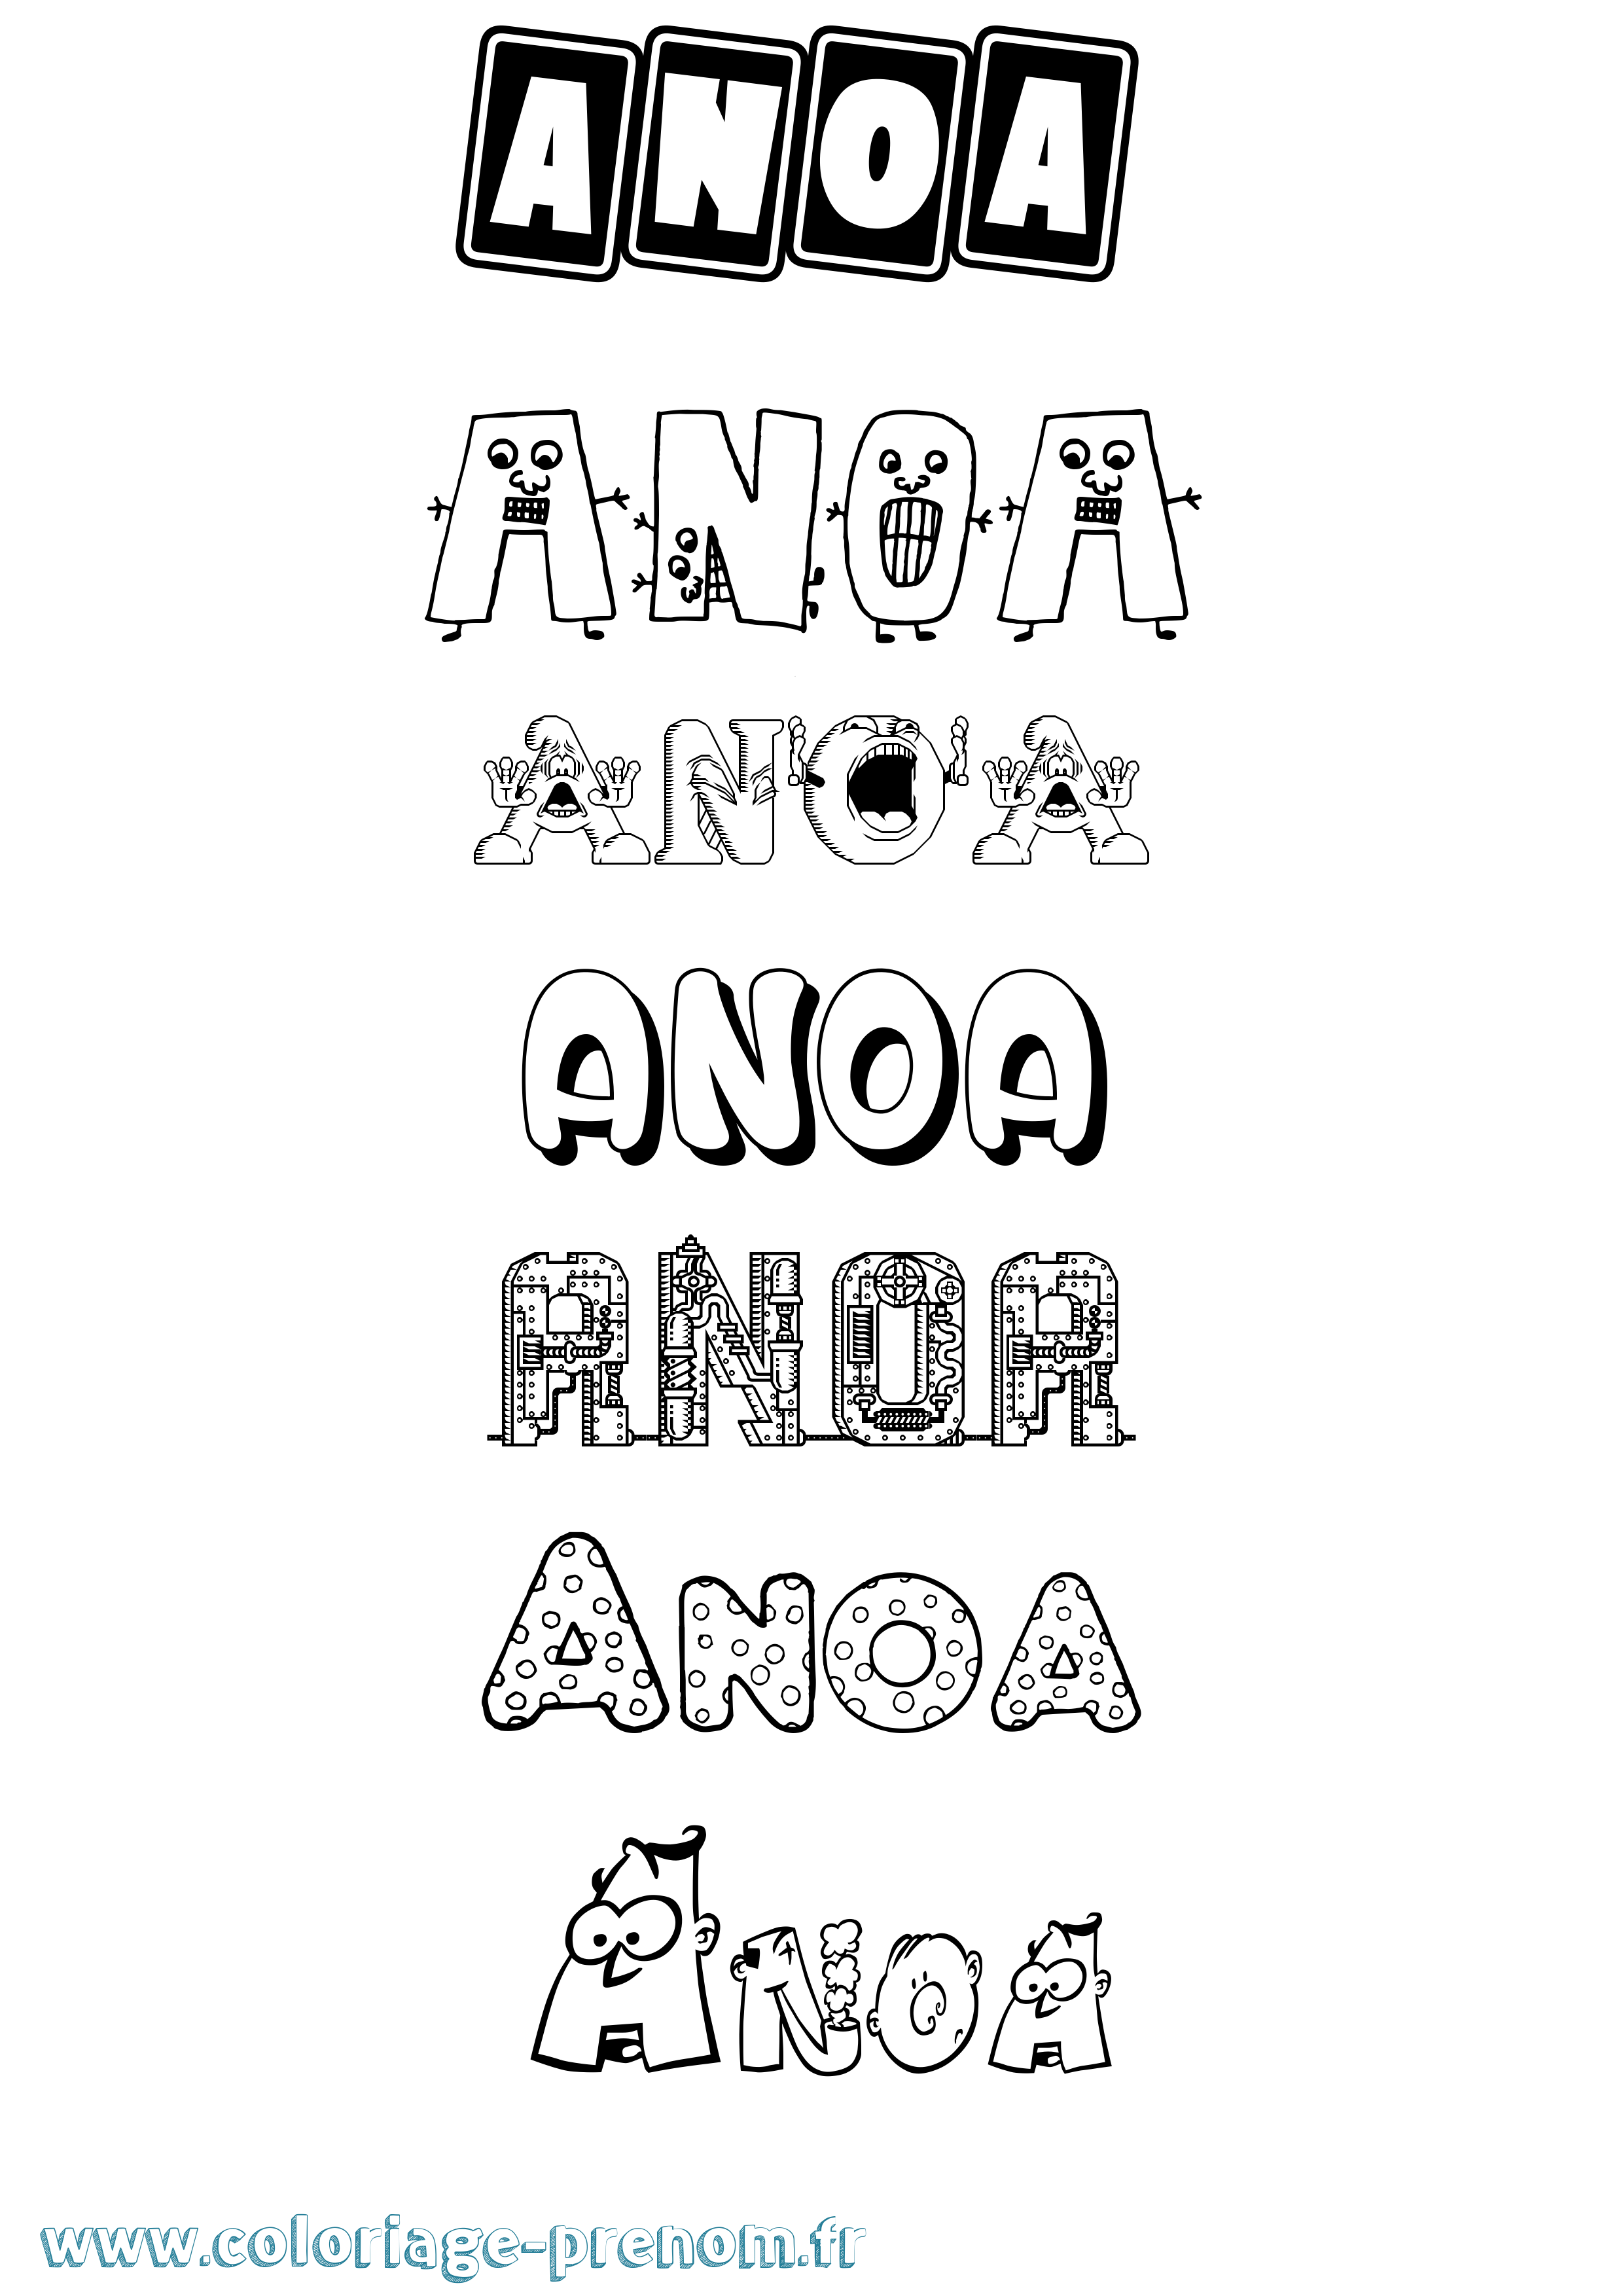 Coloriage prénom Anoa Fun